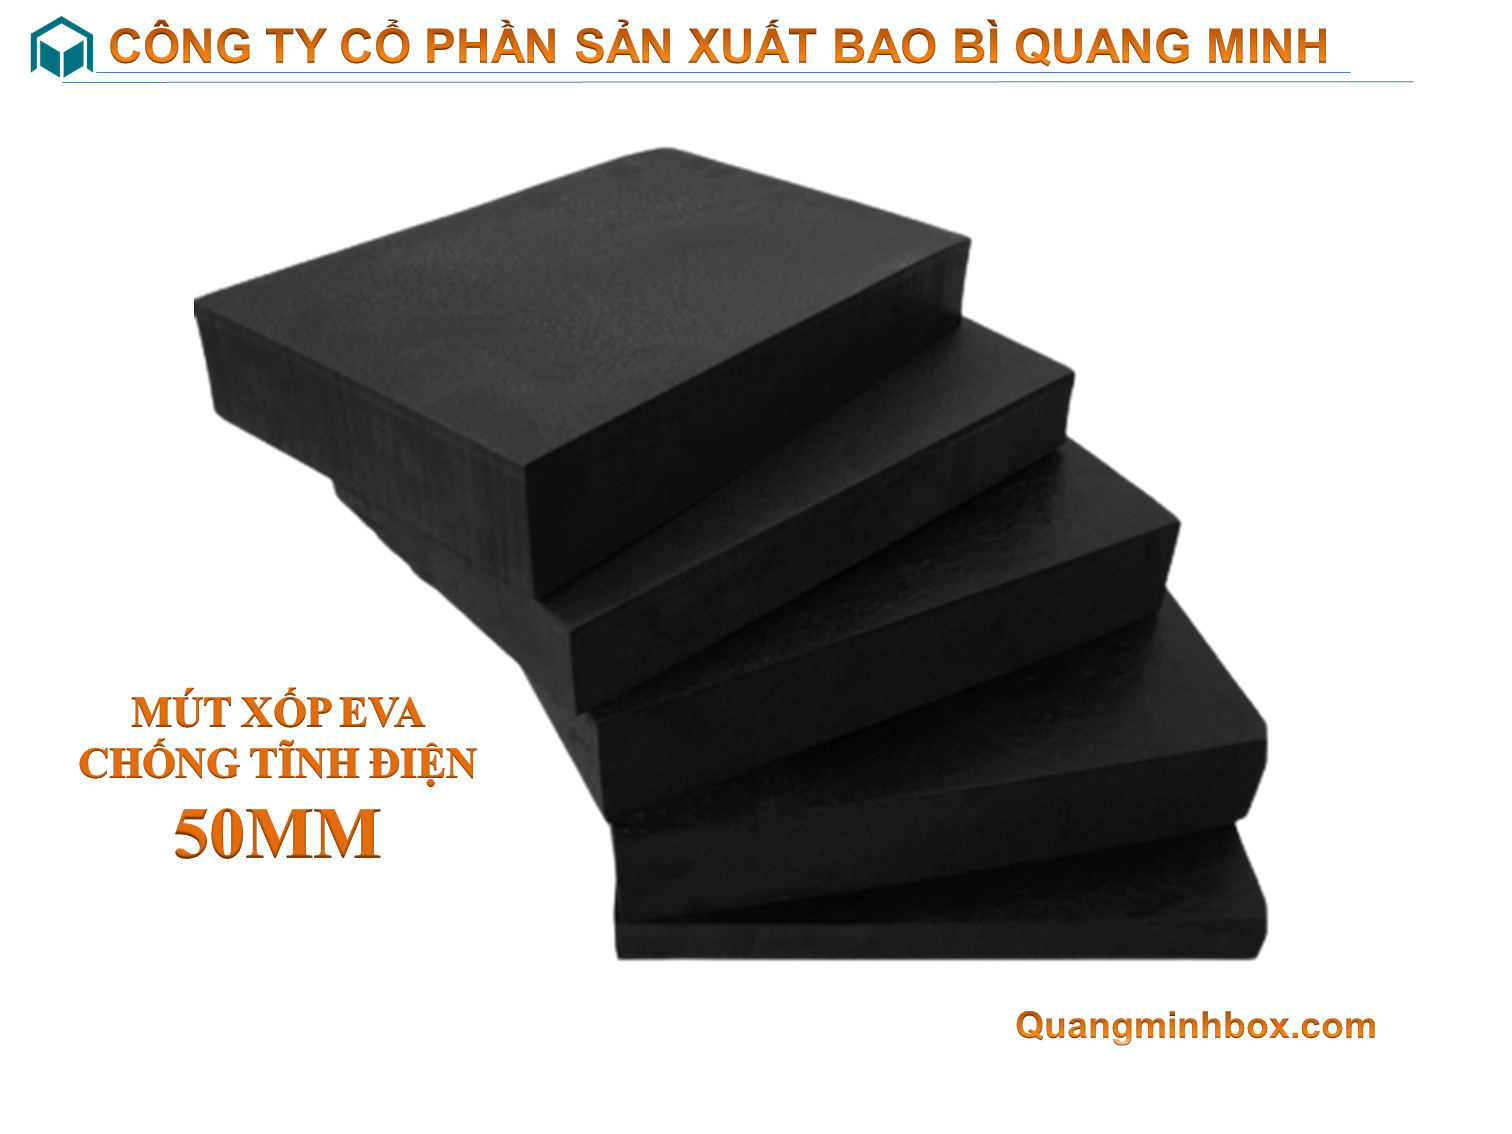 mut-xop-eva-chong-tinh-dien-50mm